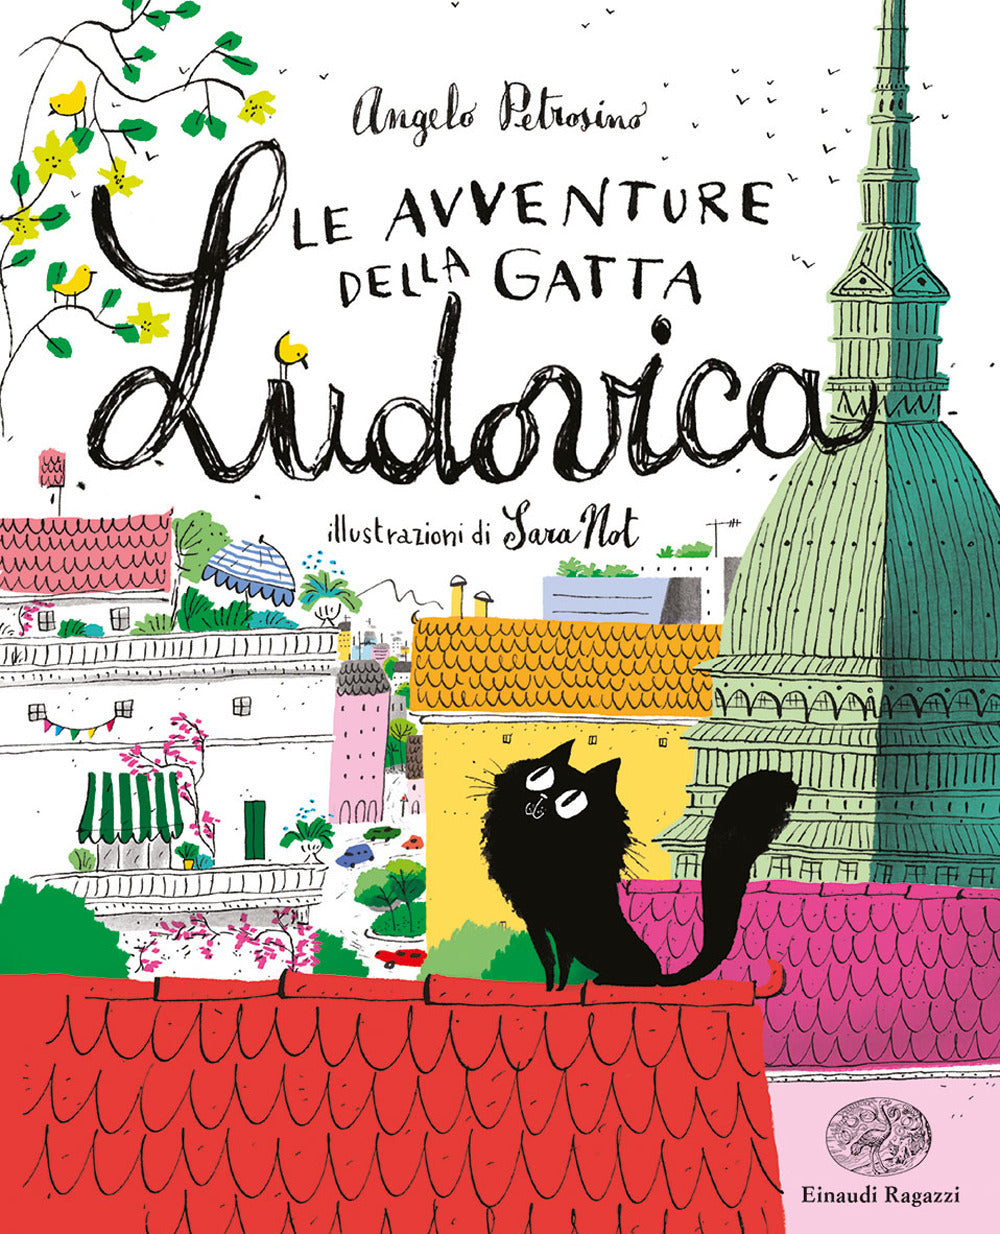 Le avventure della gatta Ludovica.